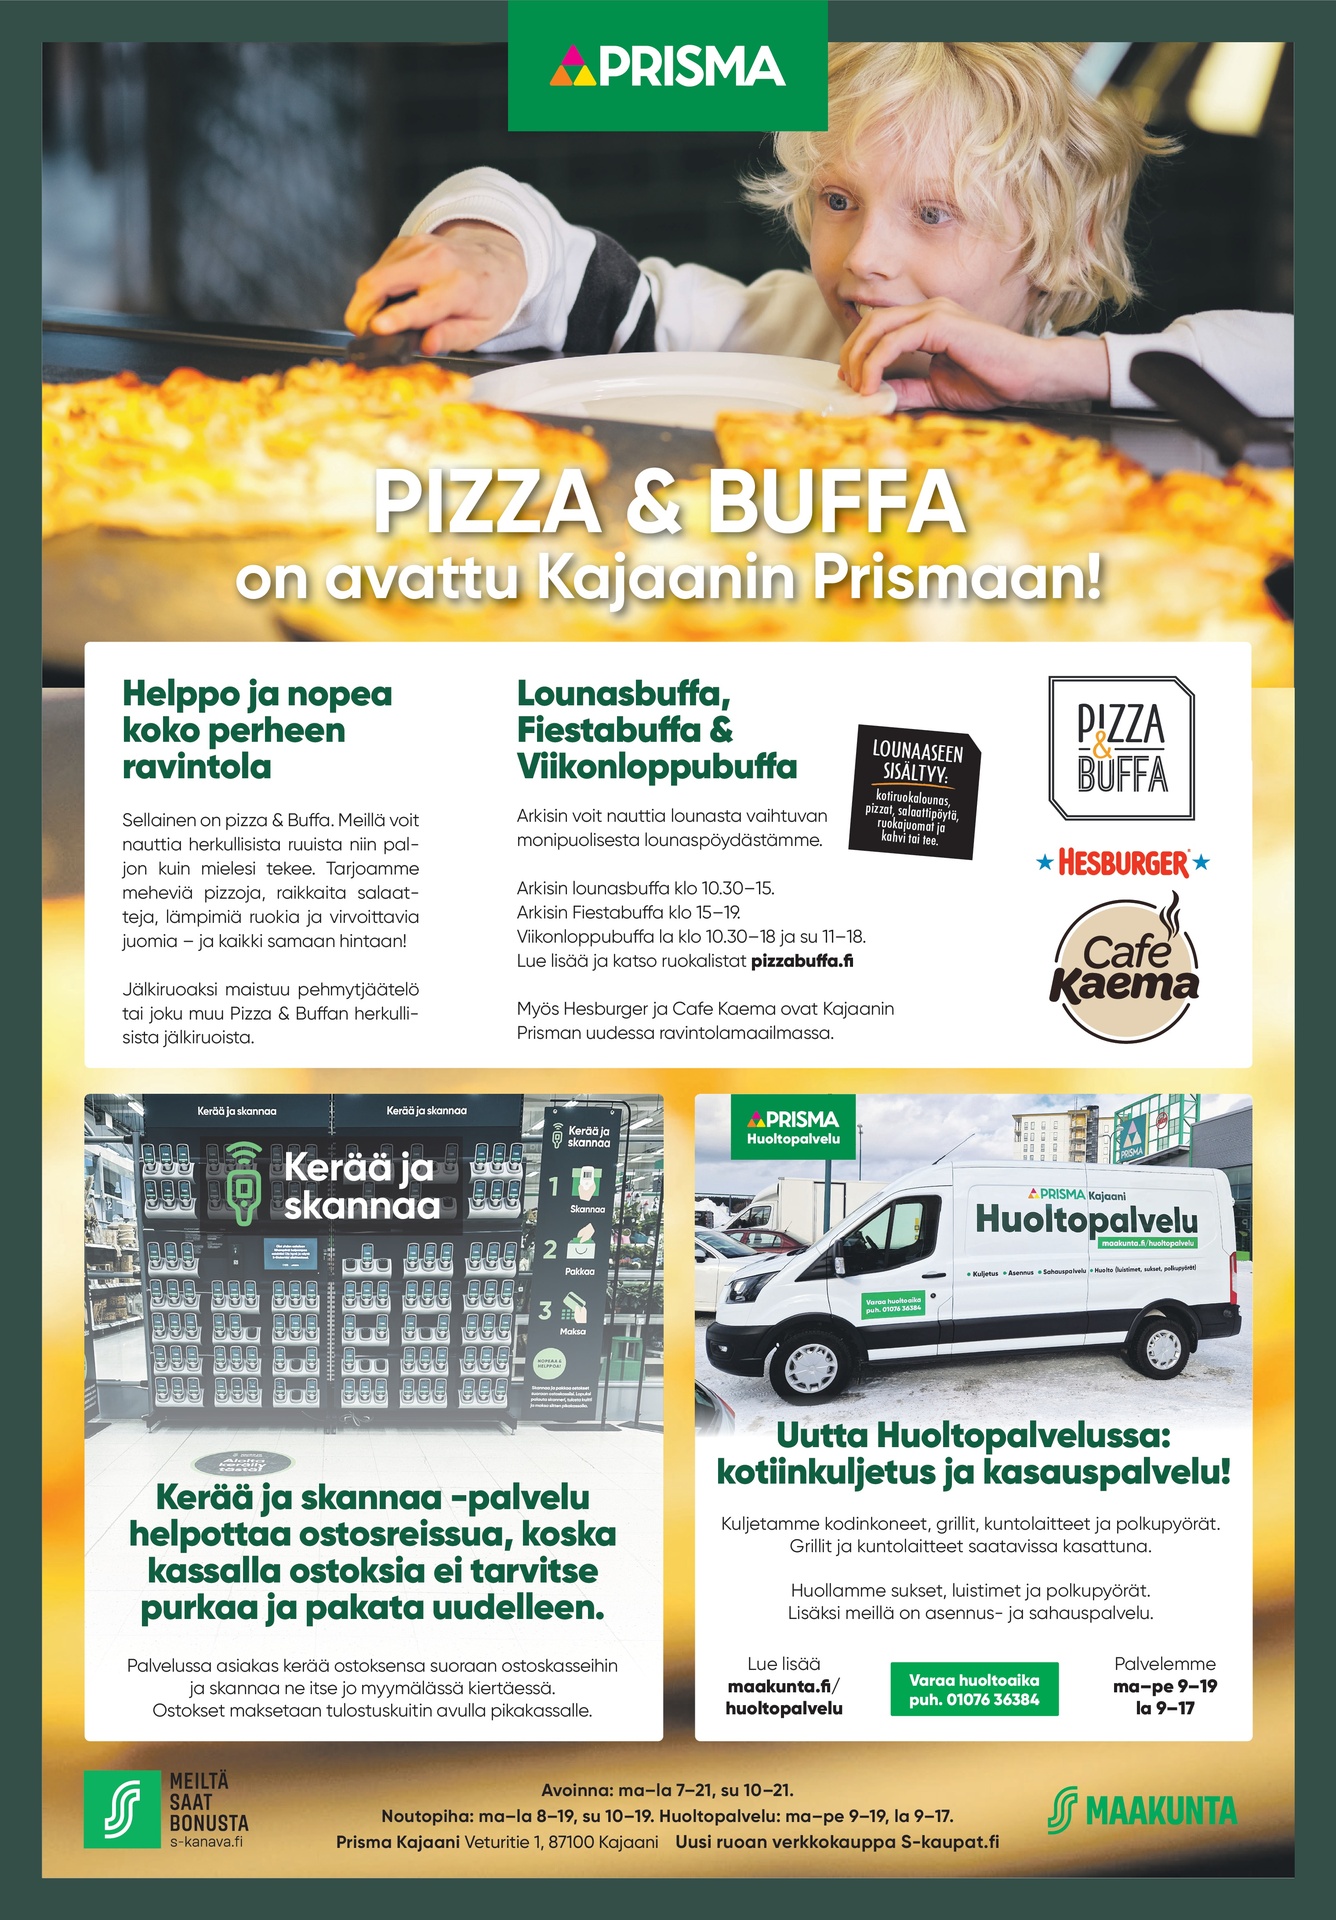 Pizza & Buffa on avattu Kajaanin Prismaan!